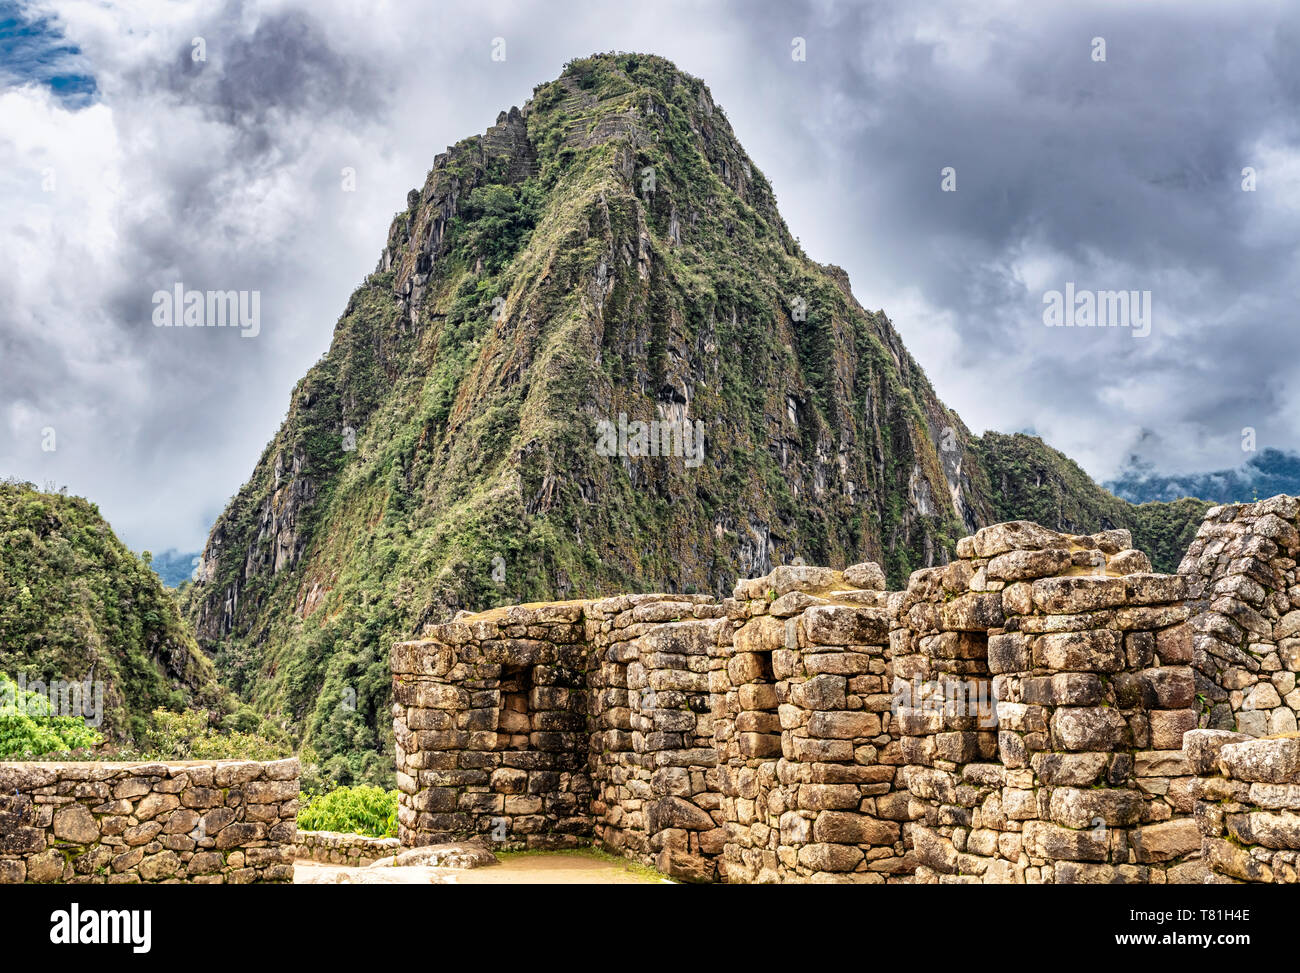 Dans les structures de bâtiments, de maisons Incas de Machu Picchu au Pérou. Wayna, Huayna Picchu pic de montagne à l'arrière-plan. Banque D'Images